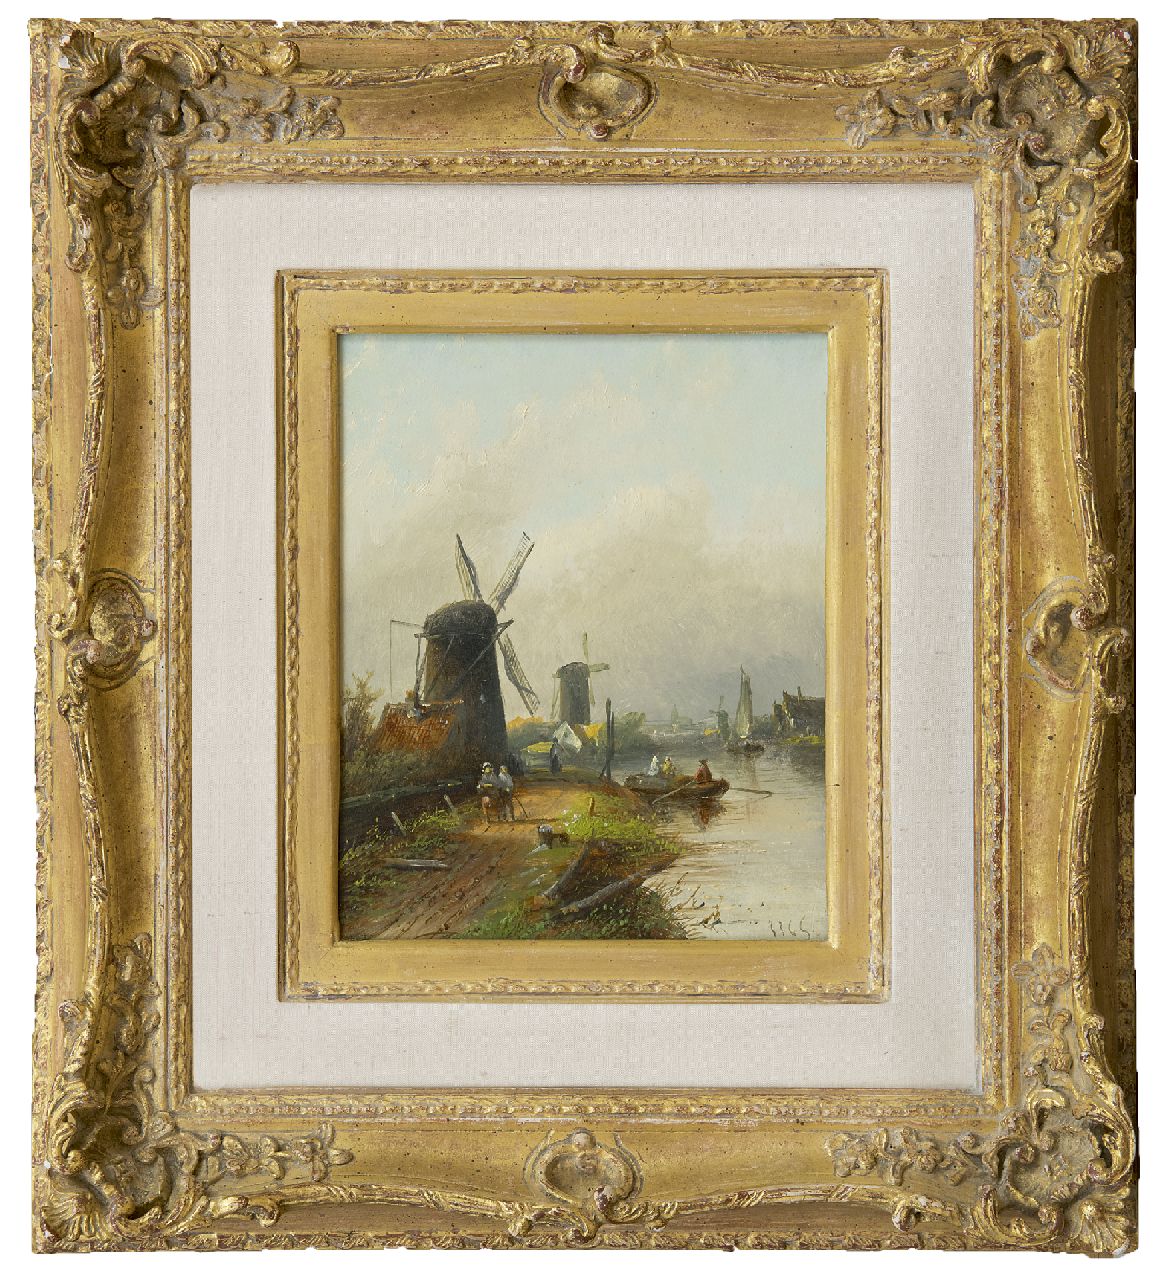 Spohler J.J.C.  | Jacob Jan Coenraad Spohler, Dutch river landscape, oil on panel 20.4 x 16.0 cm, signed l.r. with initials